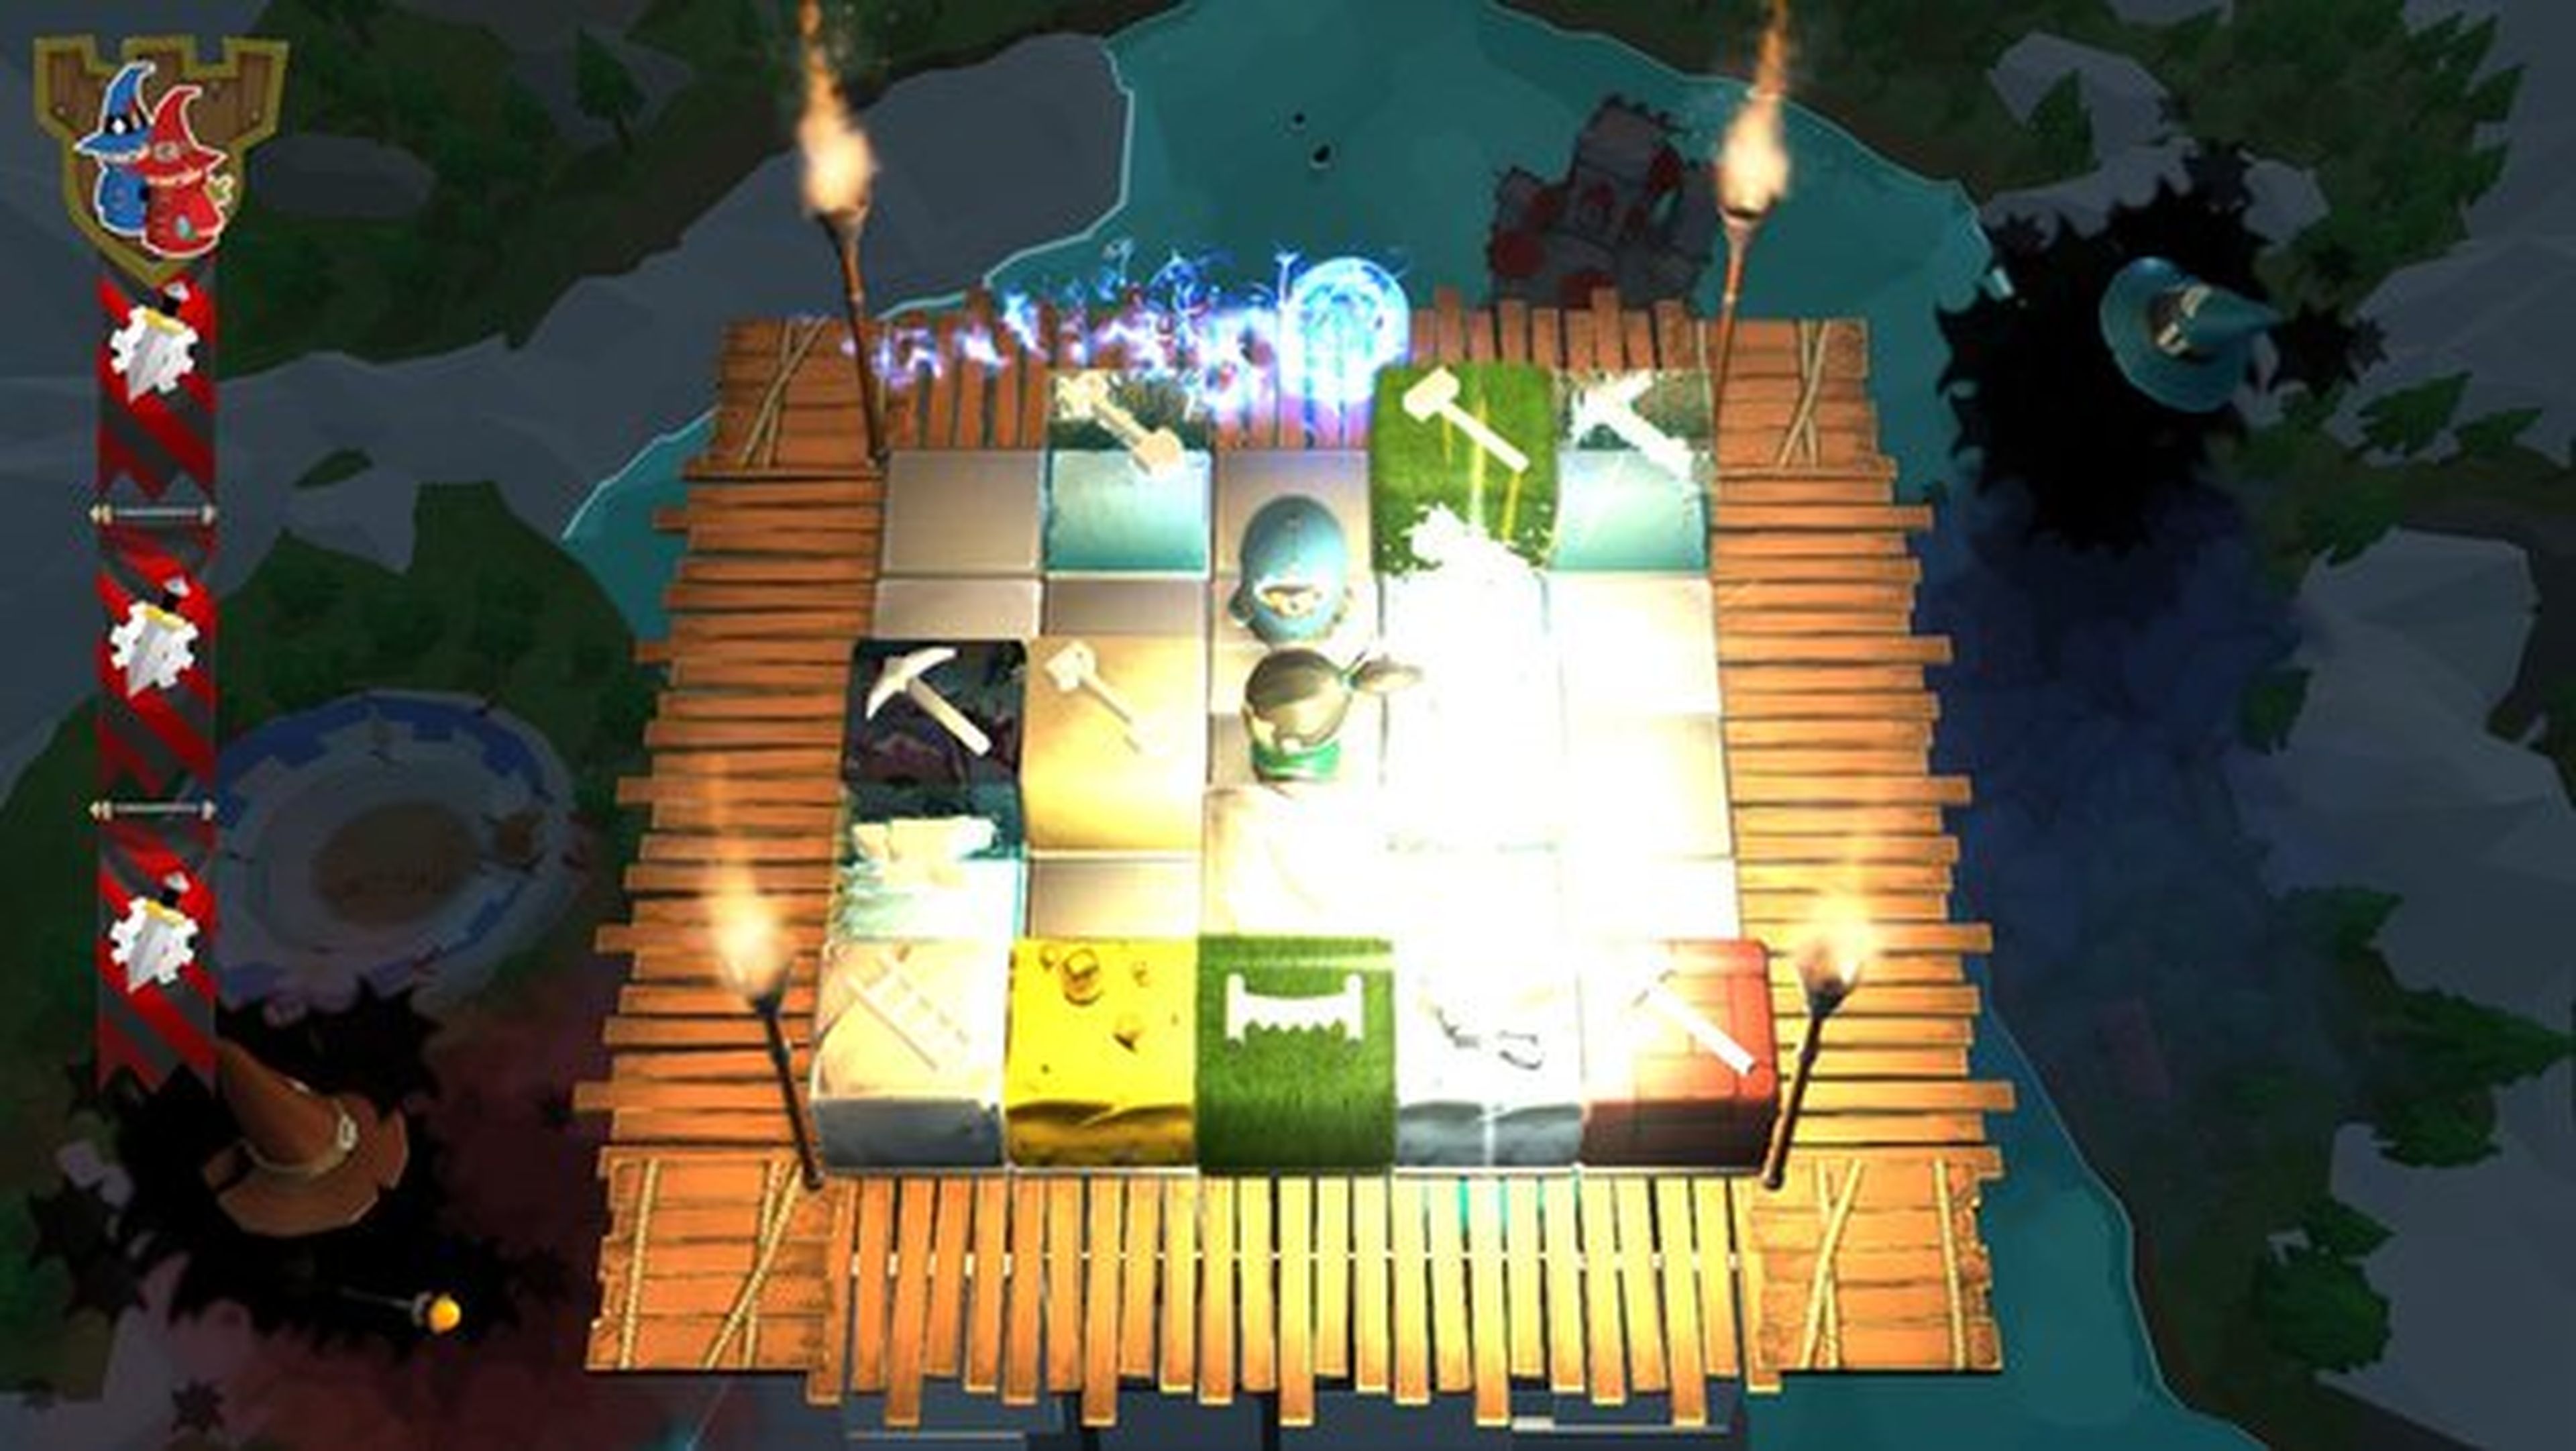 Castles nos propone mover cubos en un planteamiento perfecto para jugar con amigos.